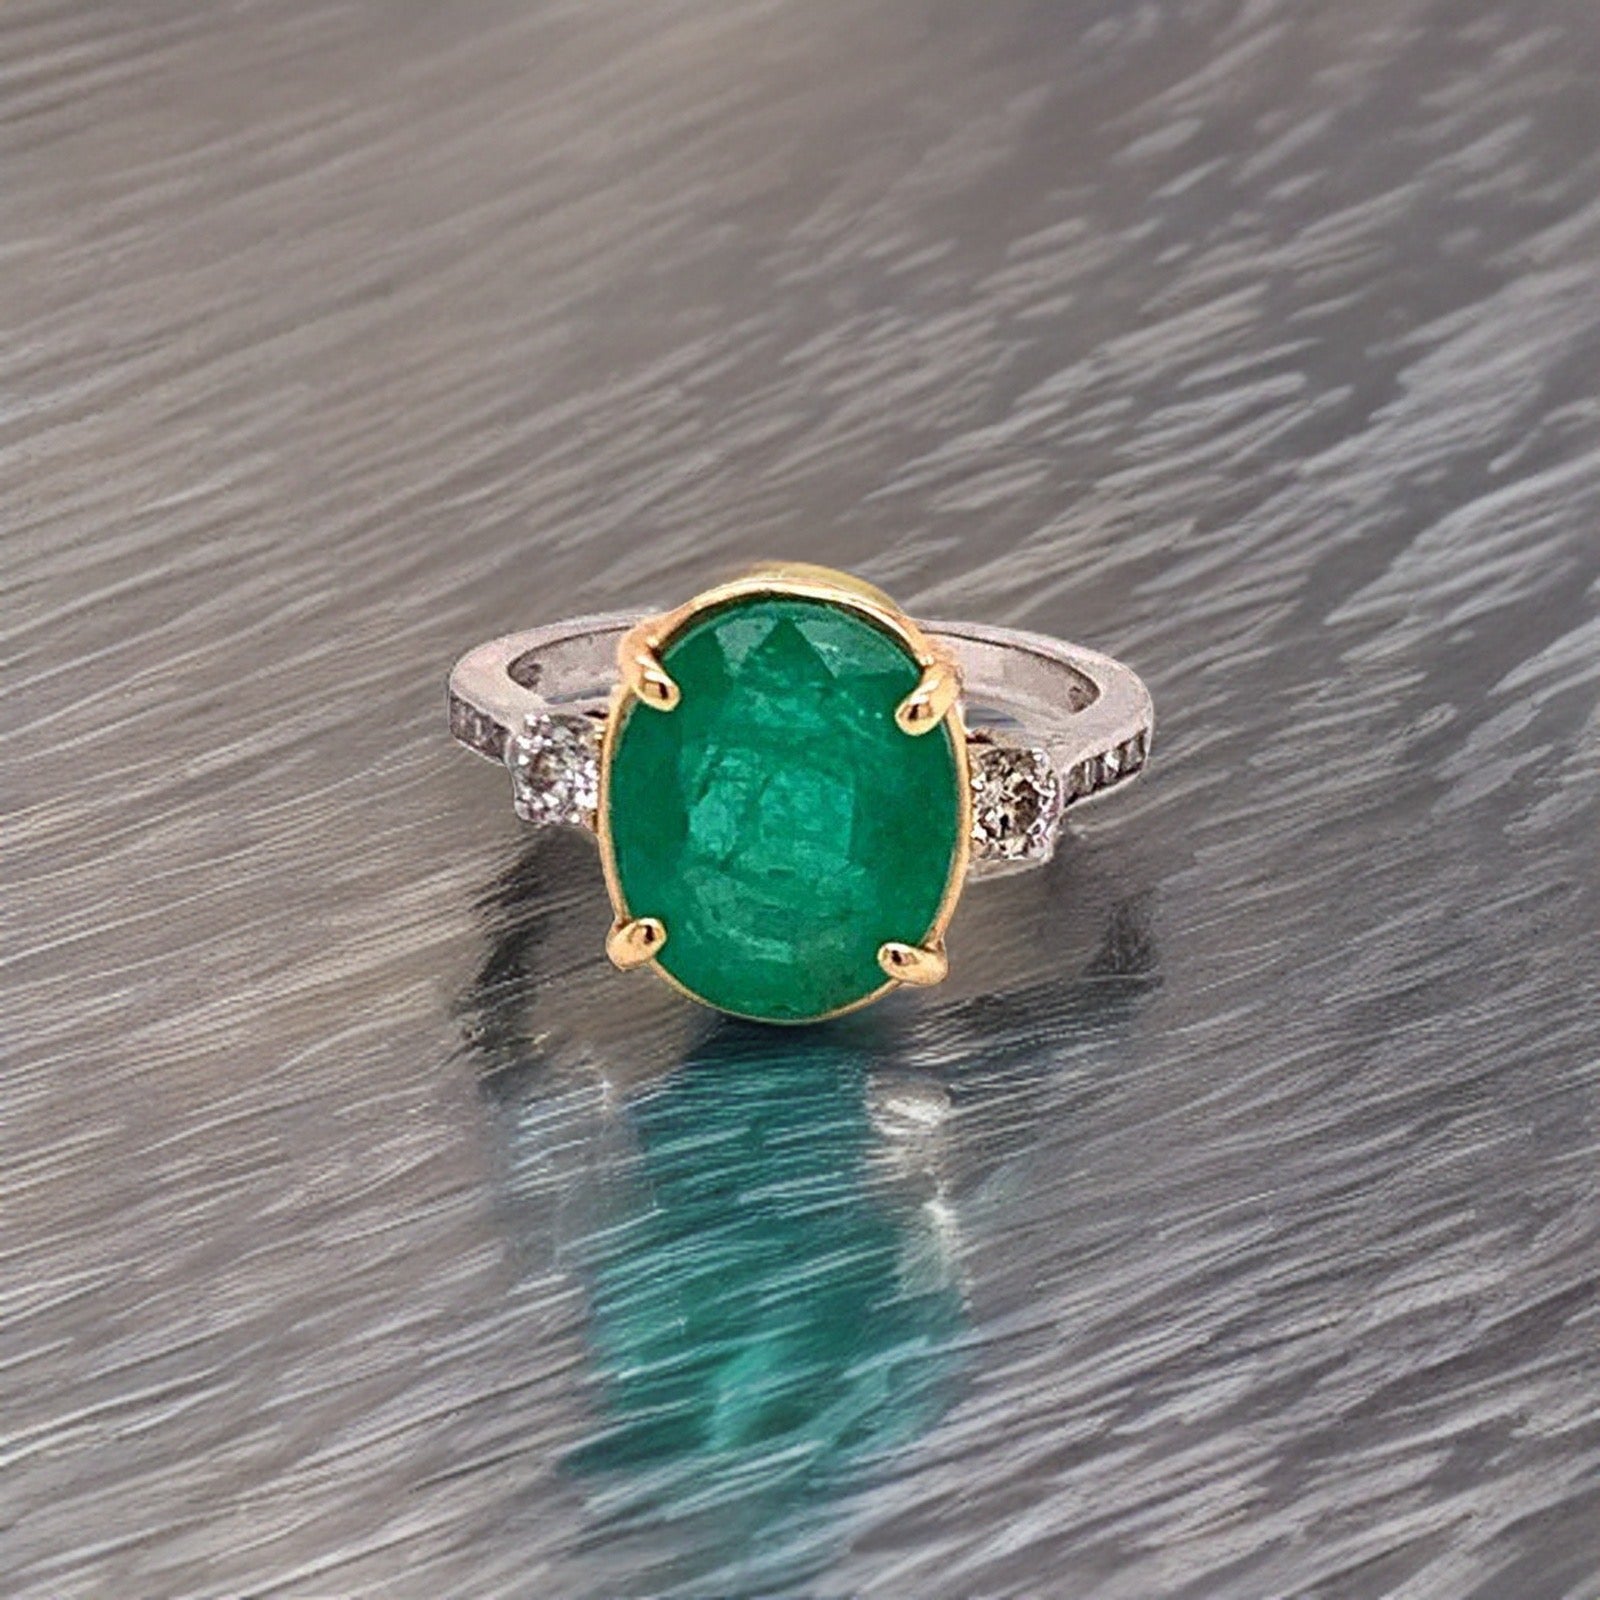 Diamond Emerald Ring 14k Gold 6.65 TCW Women Certified $5,950 915309 - Certified Fine Jewelry